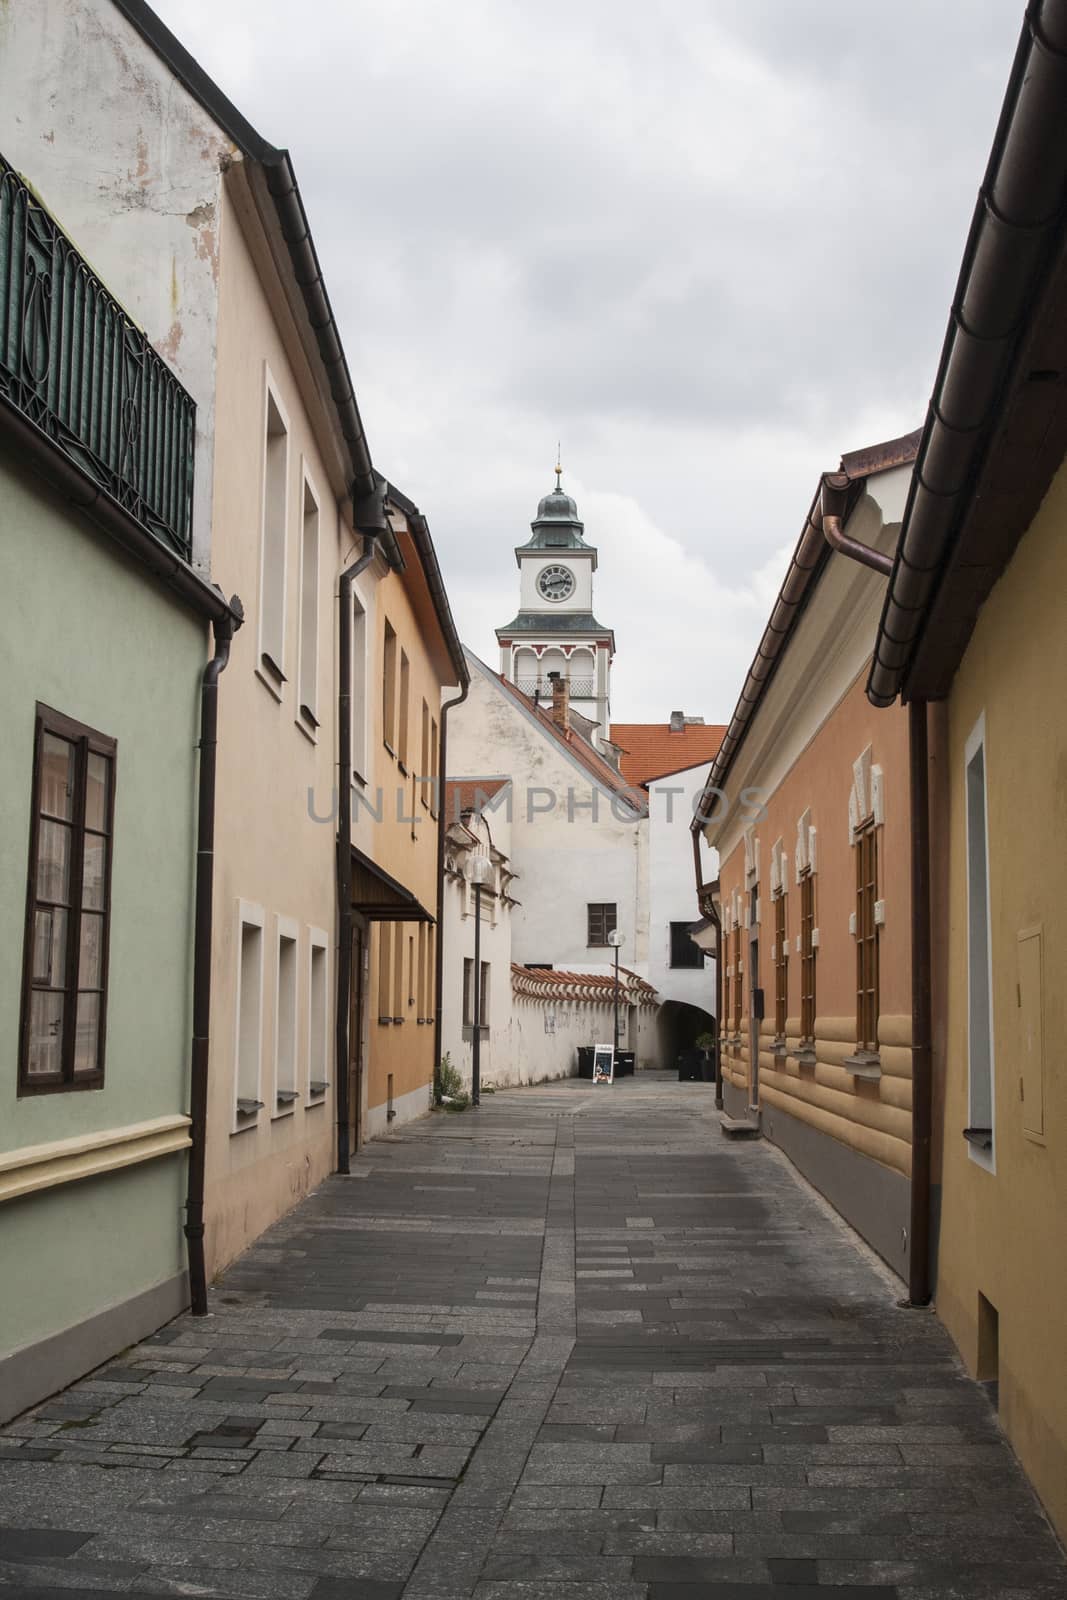 Street in Trebon, Czech Republic by A-dam